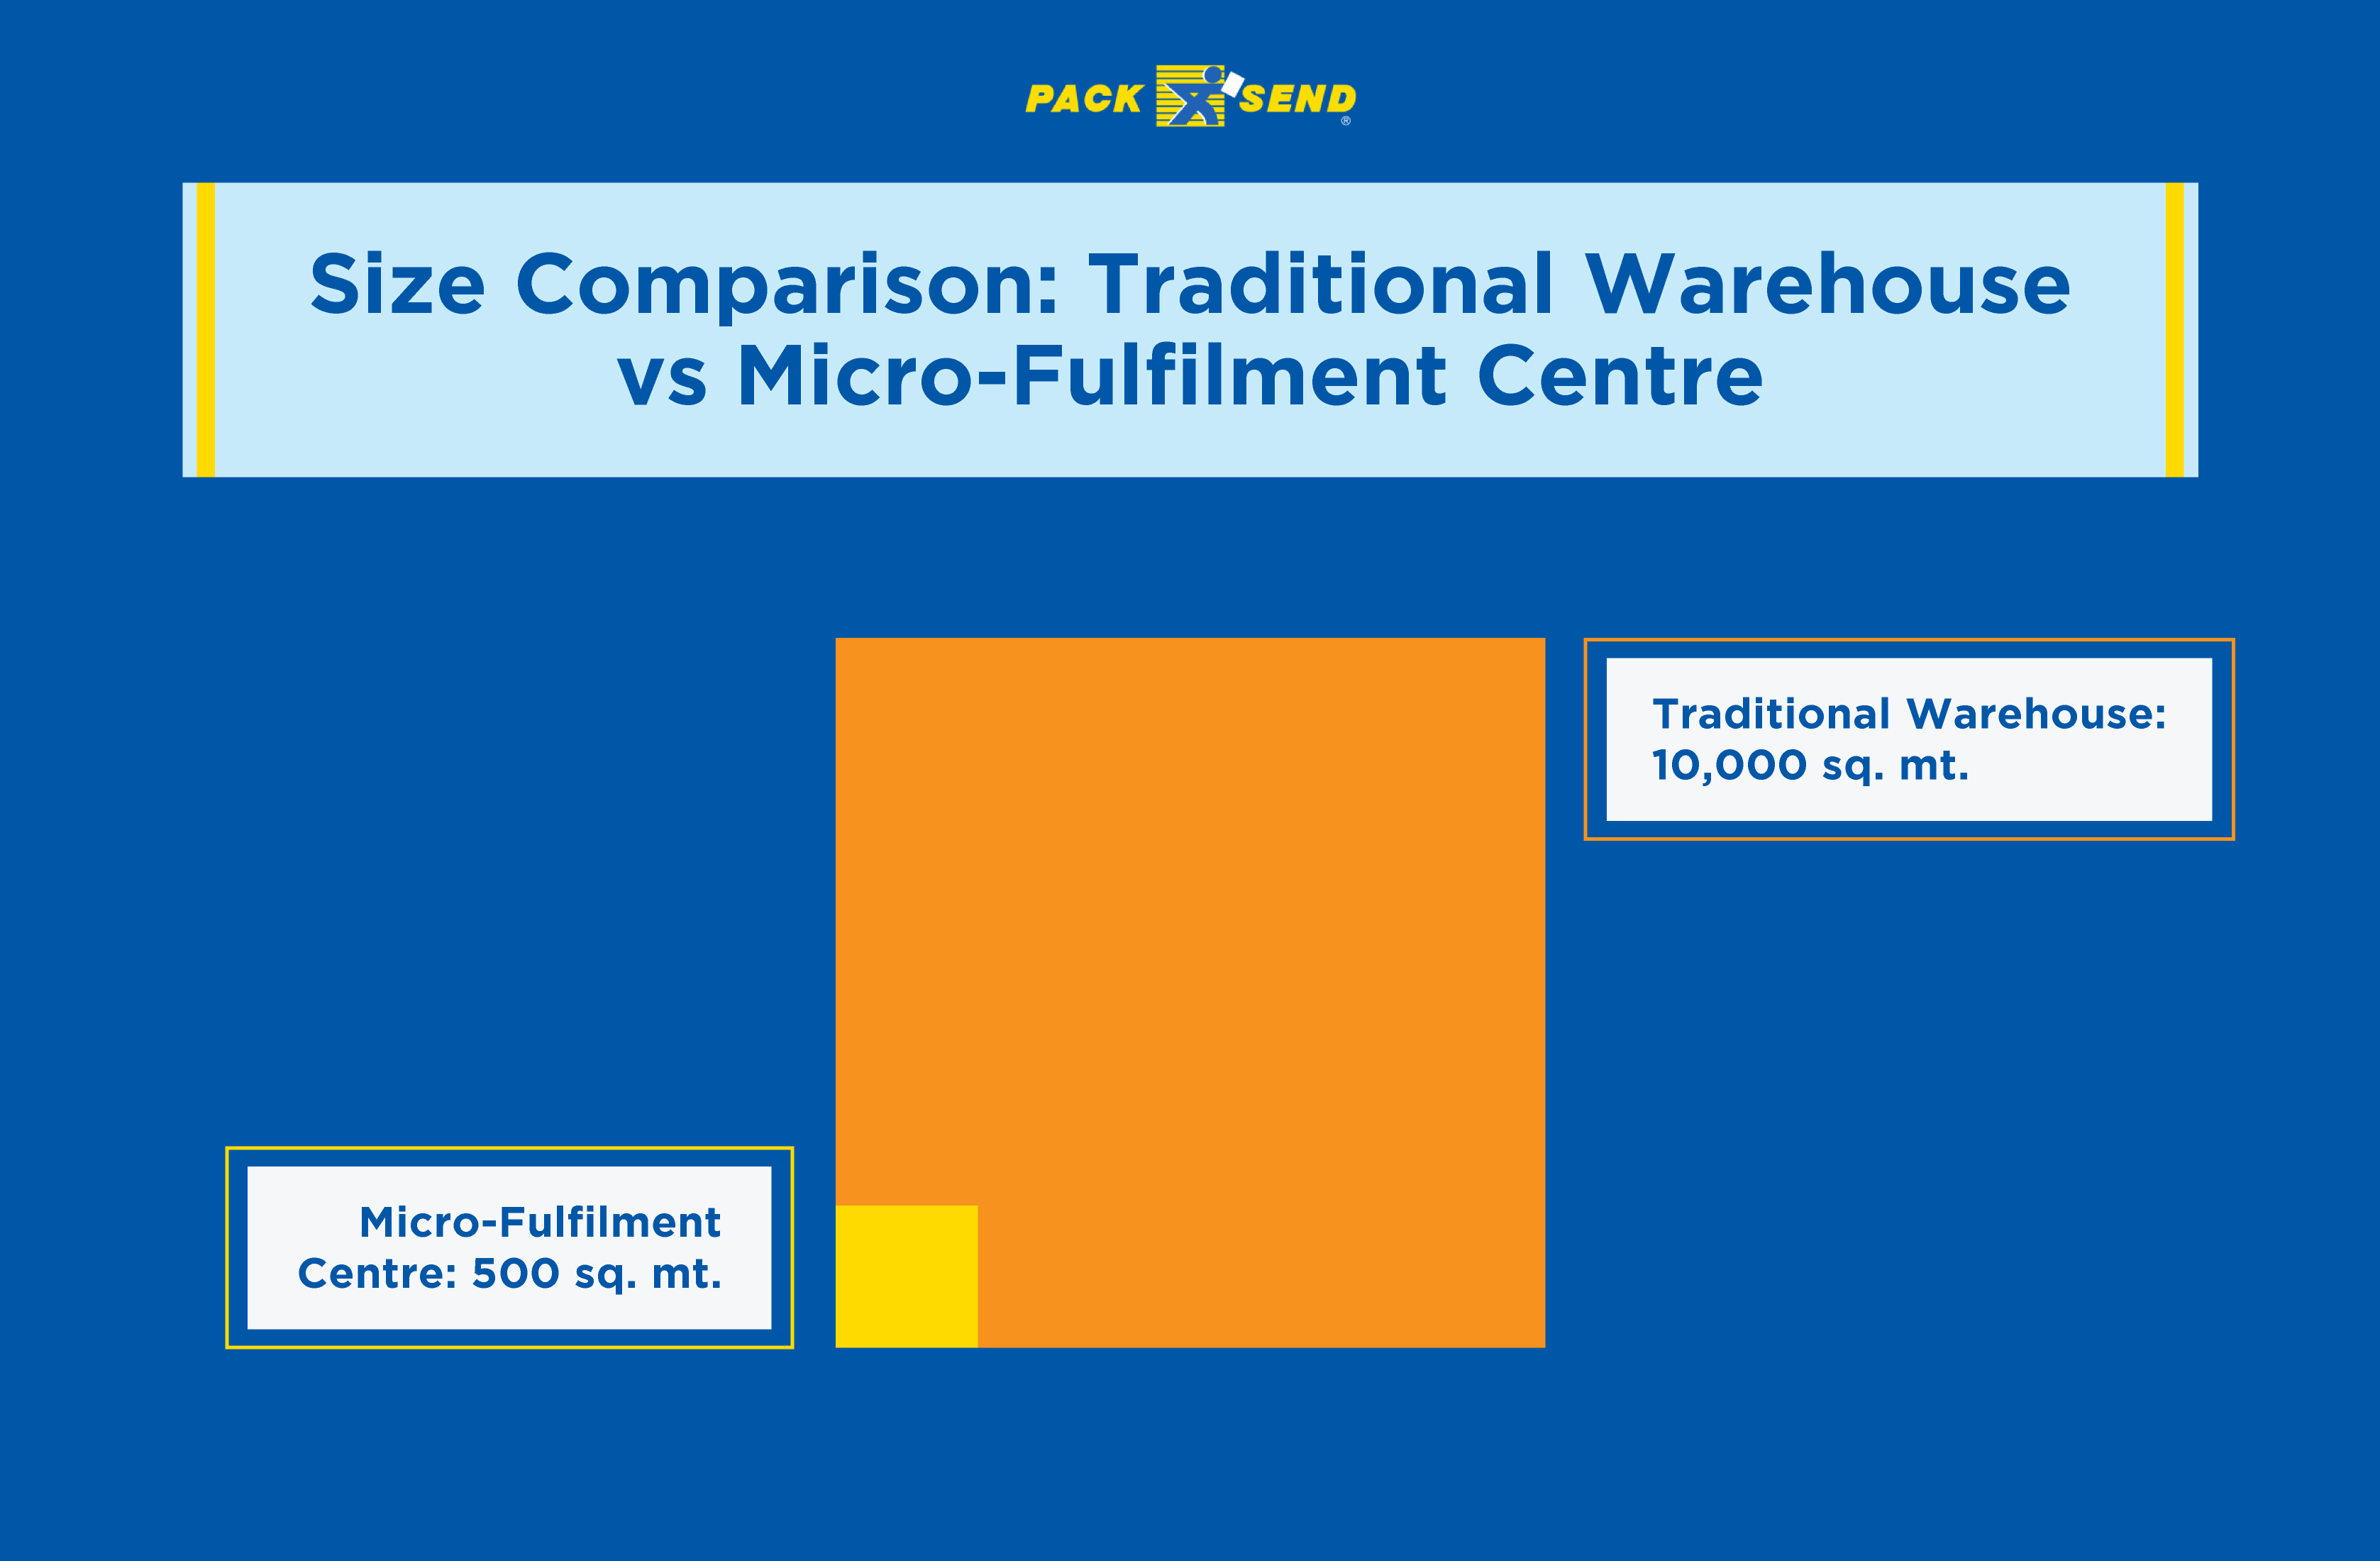 Traditional warehouse vs. micro-fulfilment centre size comparison